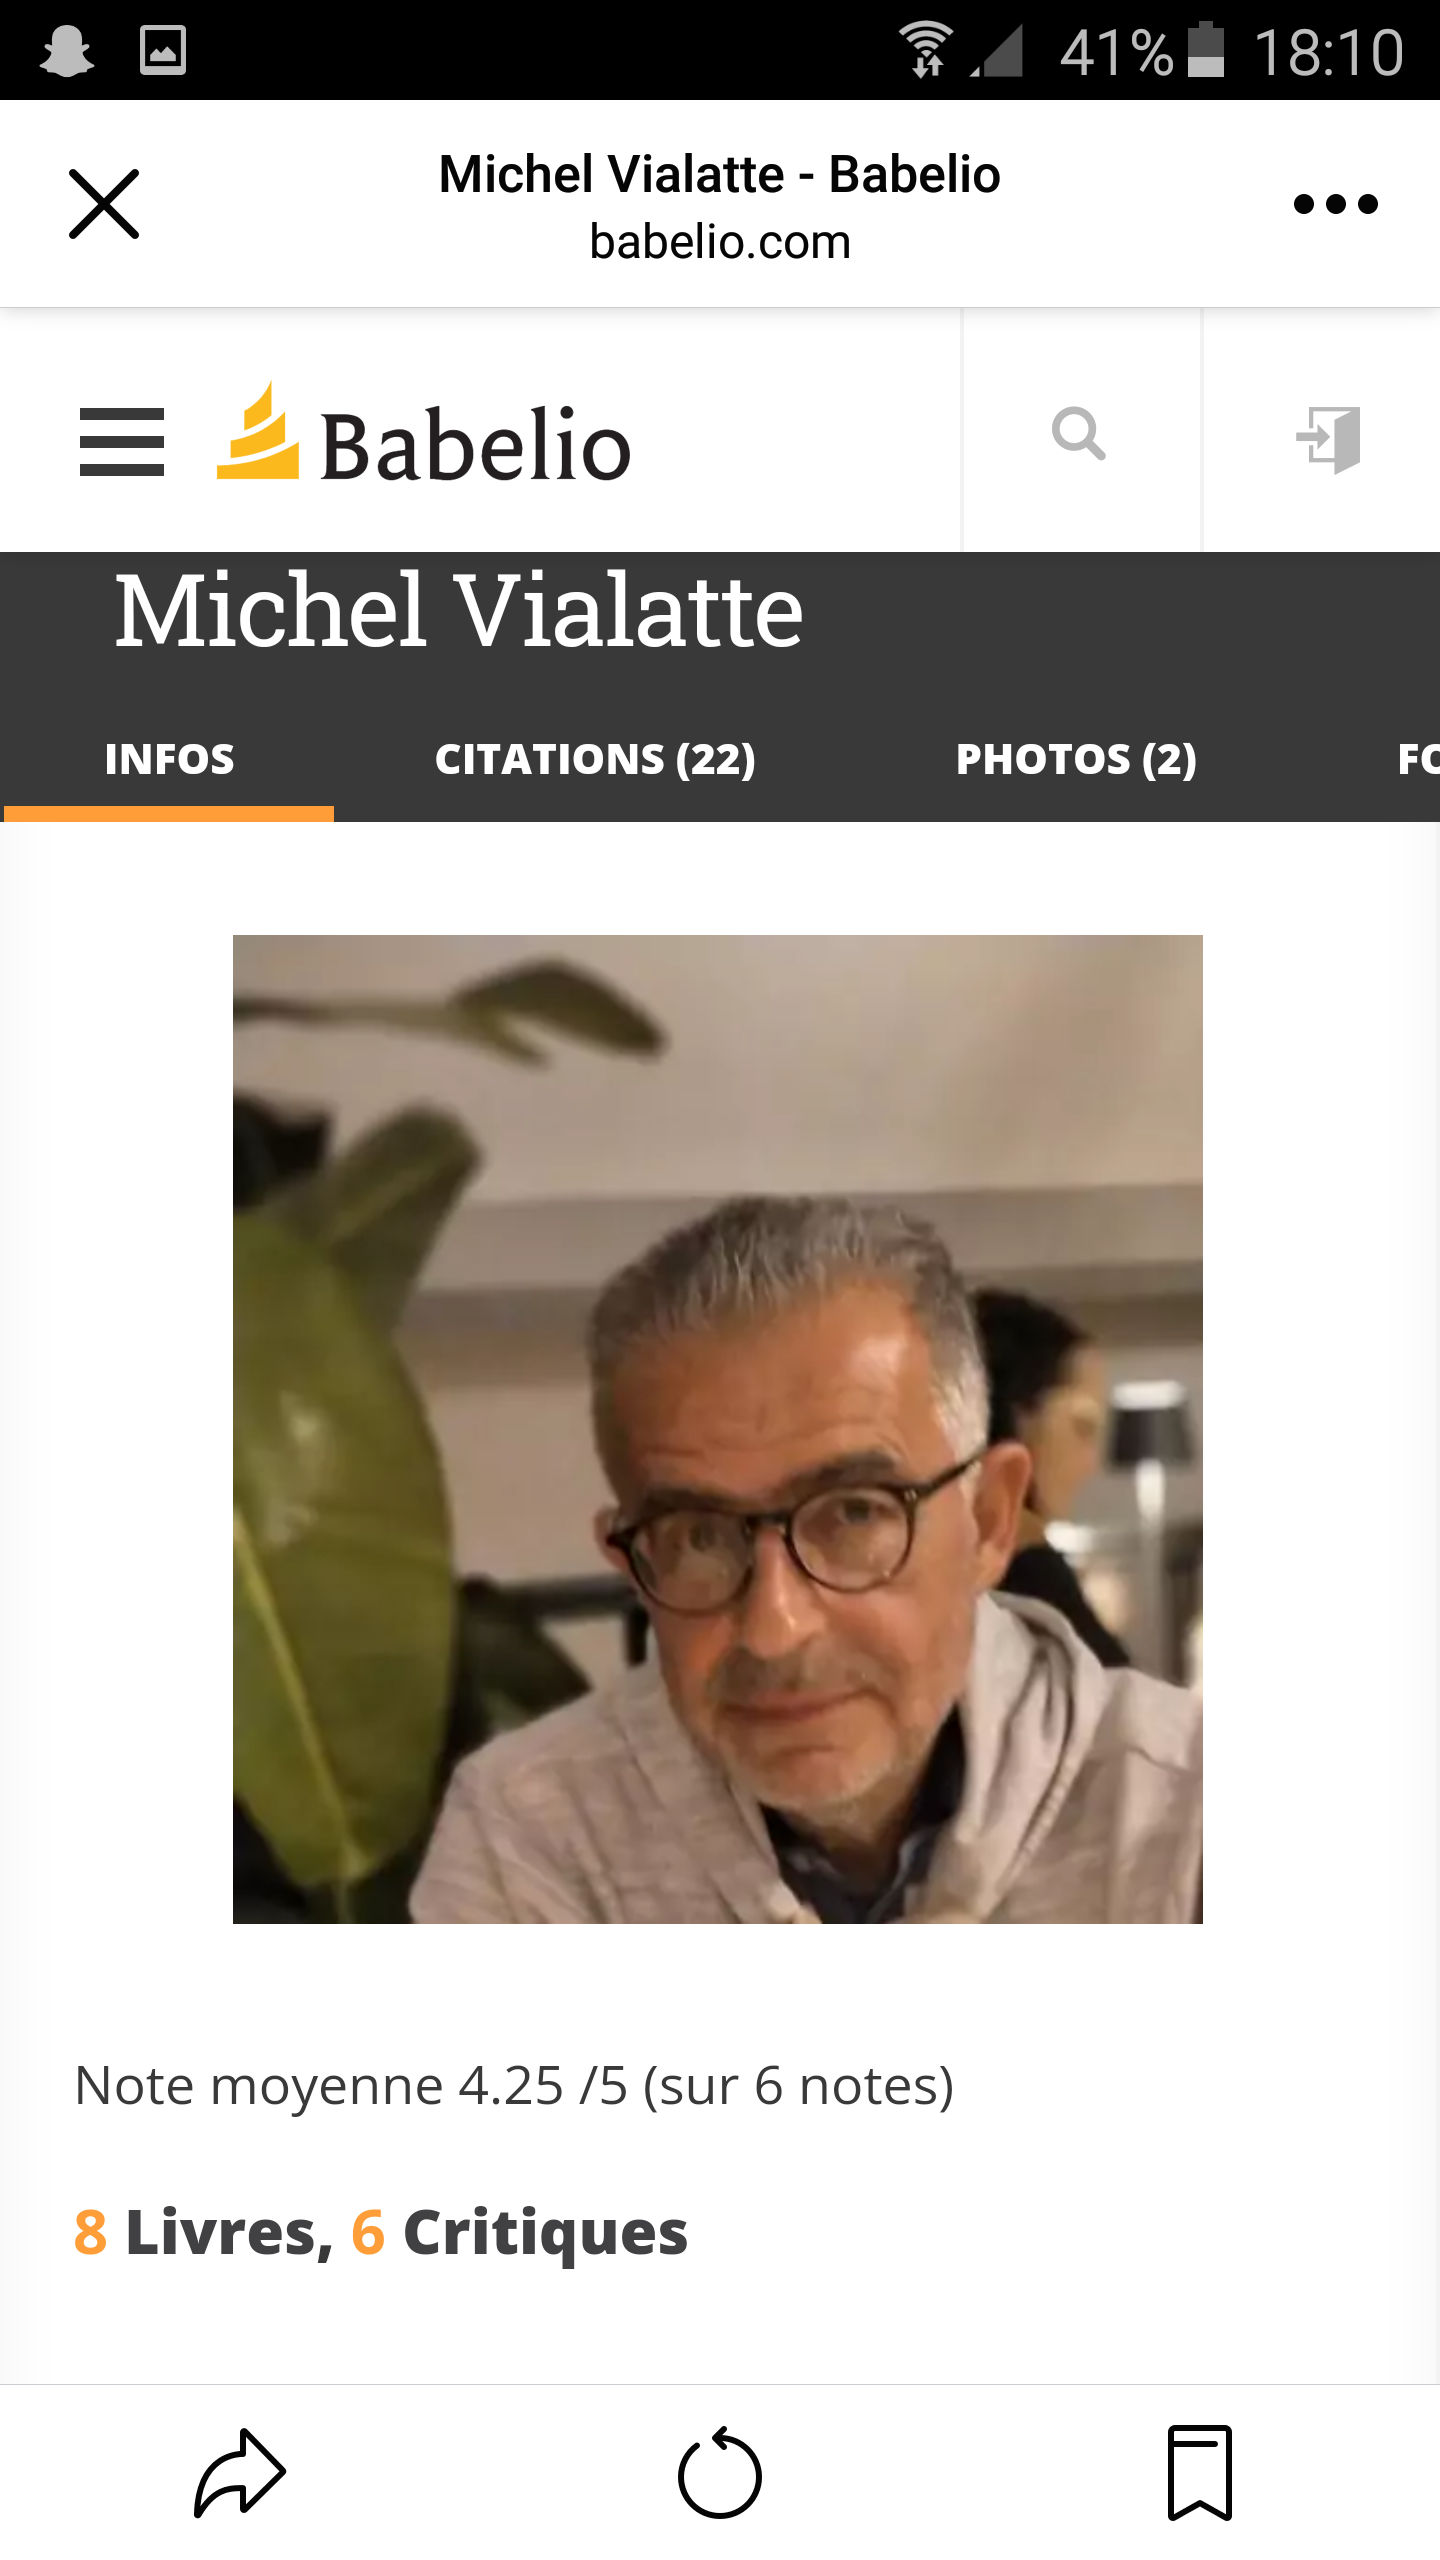 Une page auteur et œuvres consacrée à Michel Vialatte sur le site Babelio